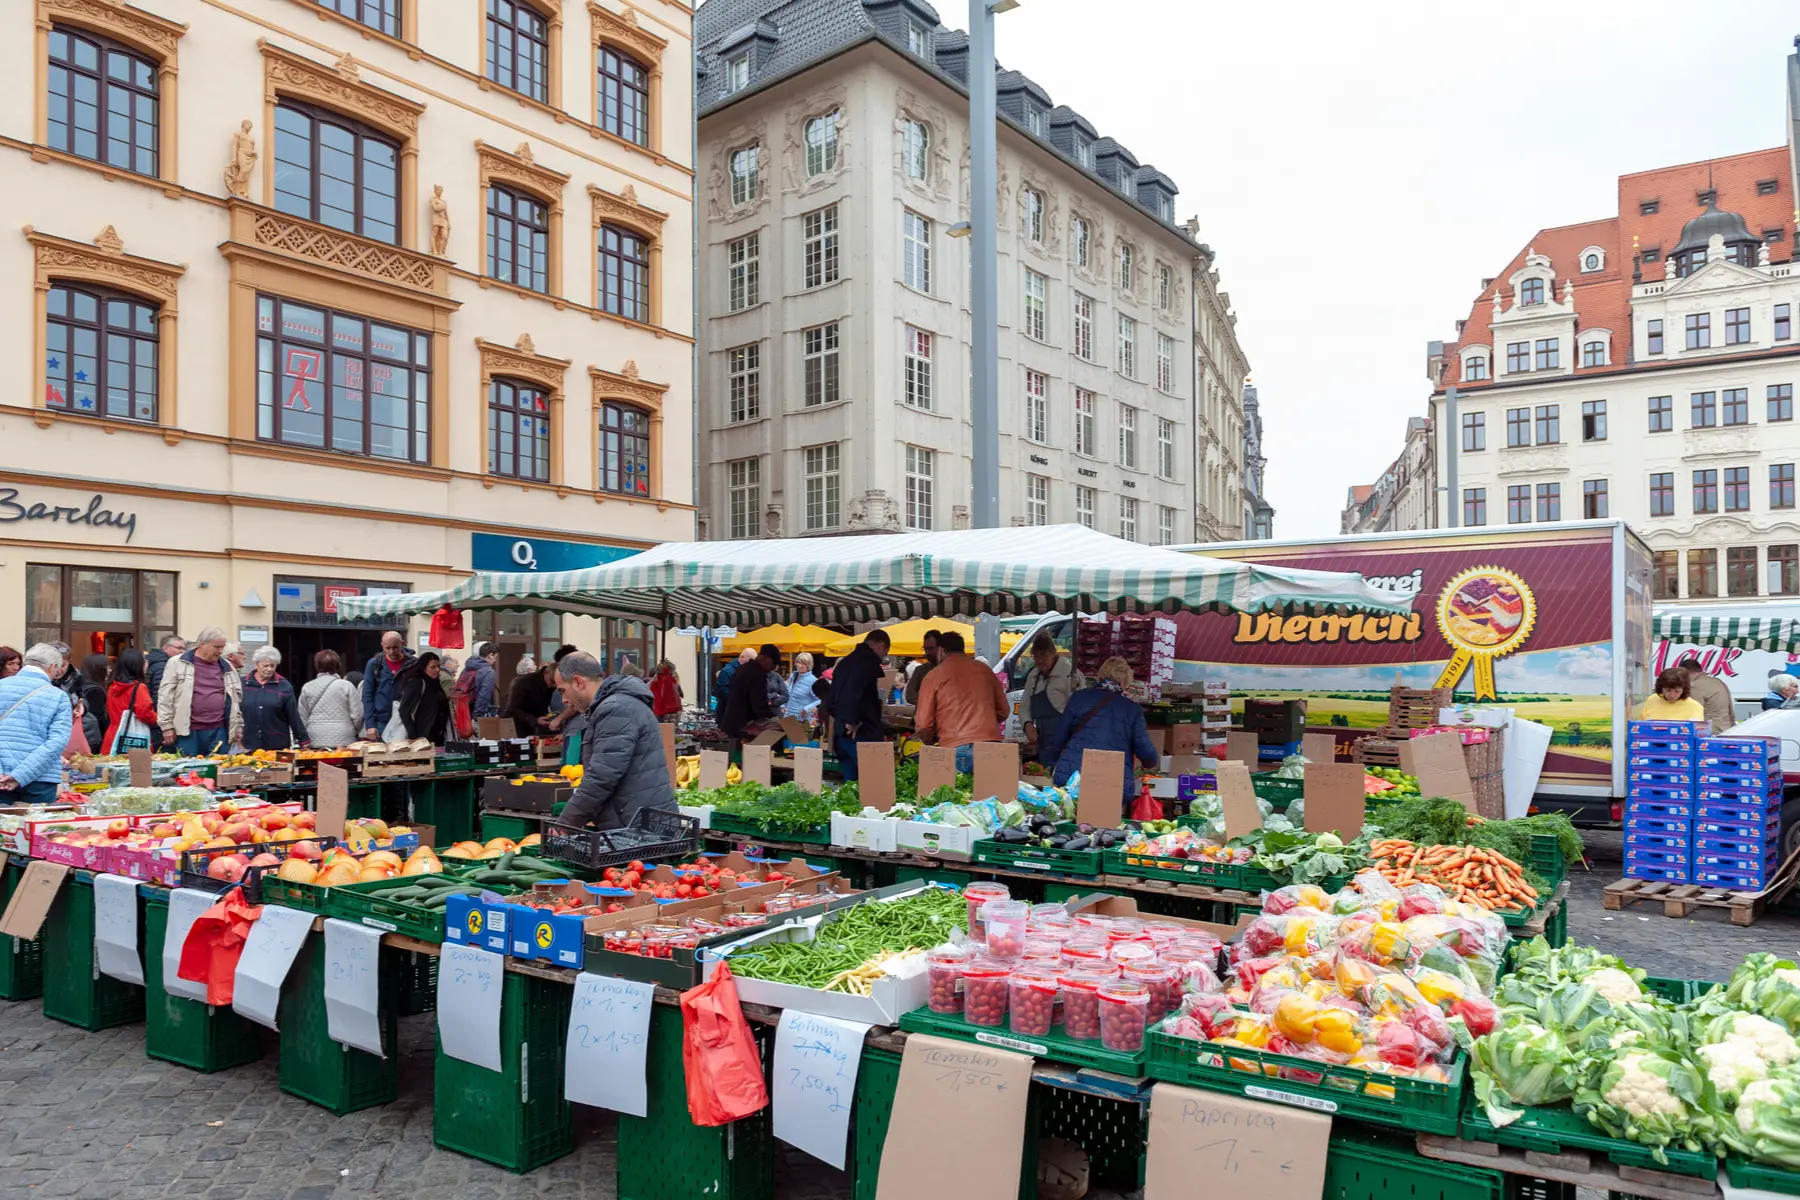 Farmers market in Leipzig